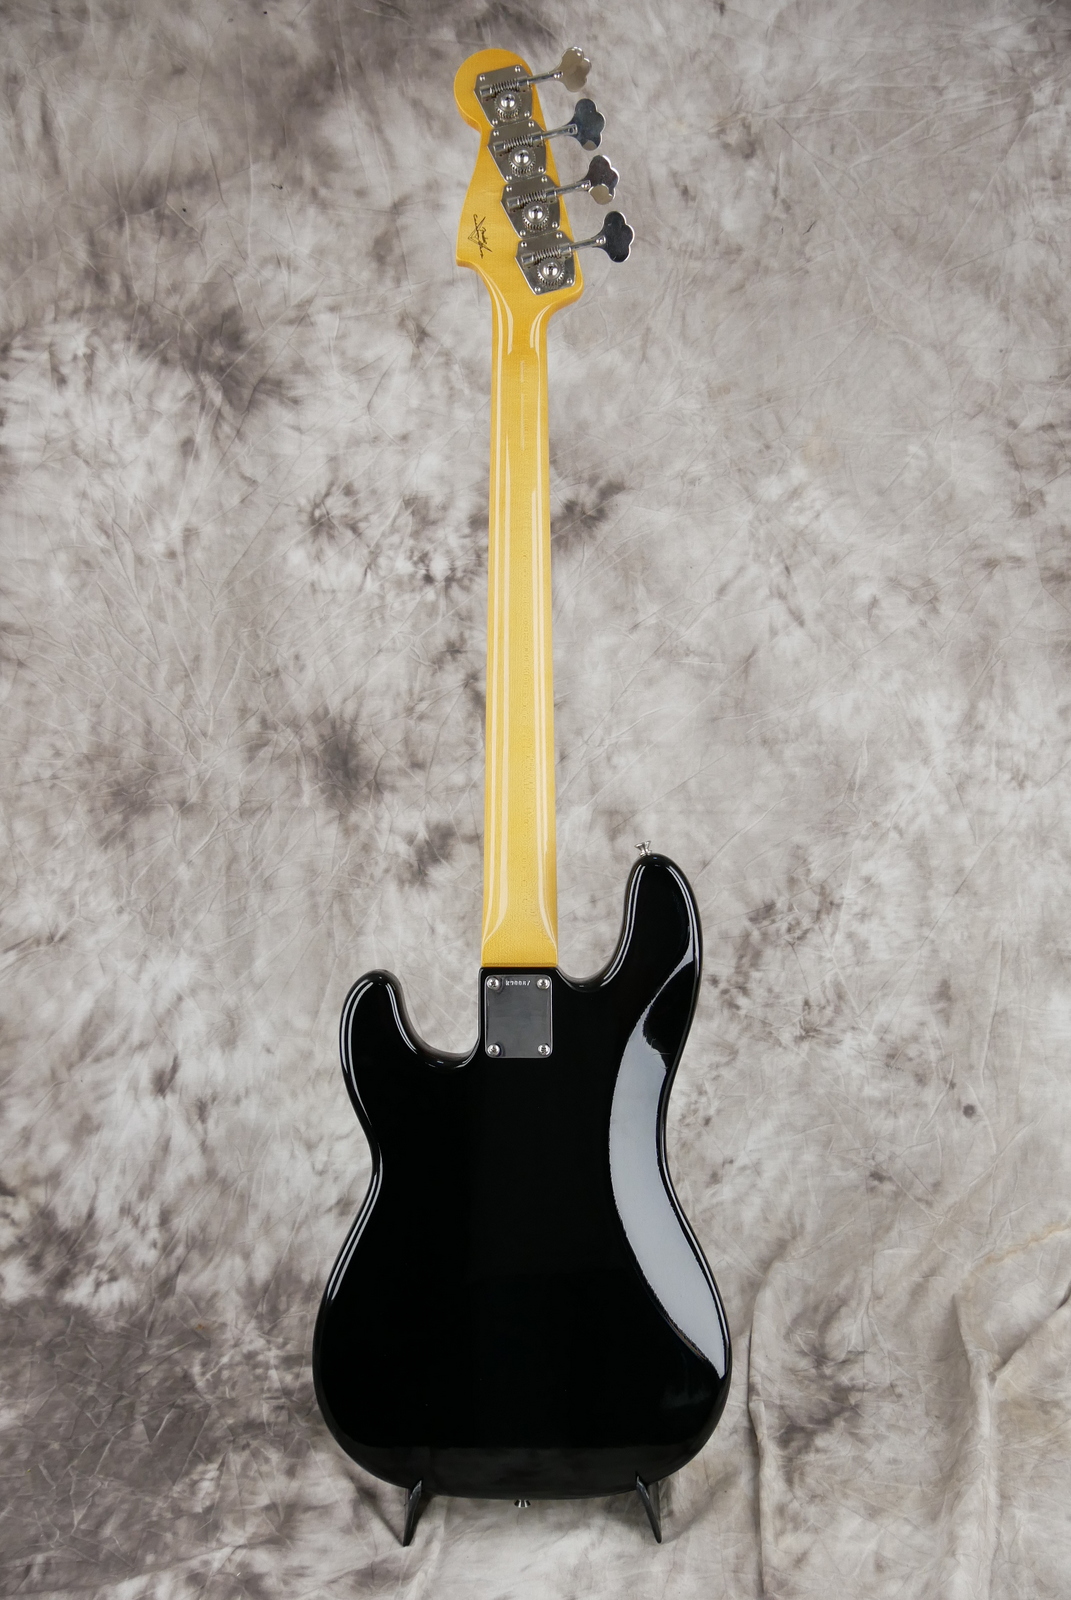 Fender-Precision-Bass-59-RI-black-Custom-Shop-ebony-fretboard-002.JPG